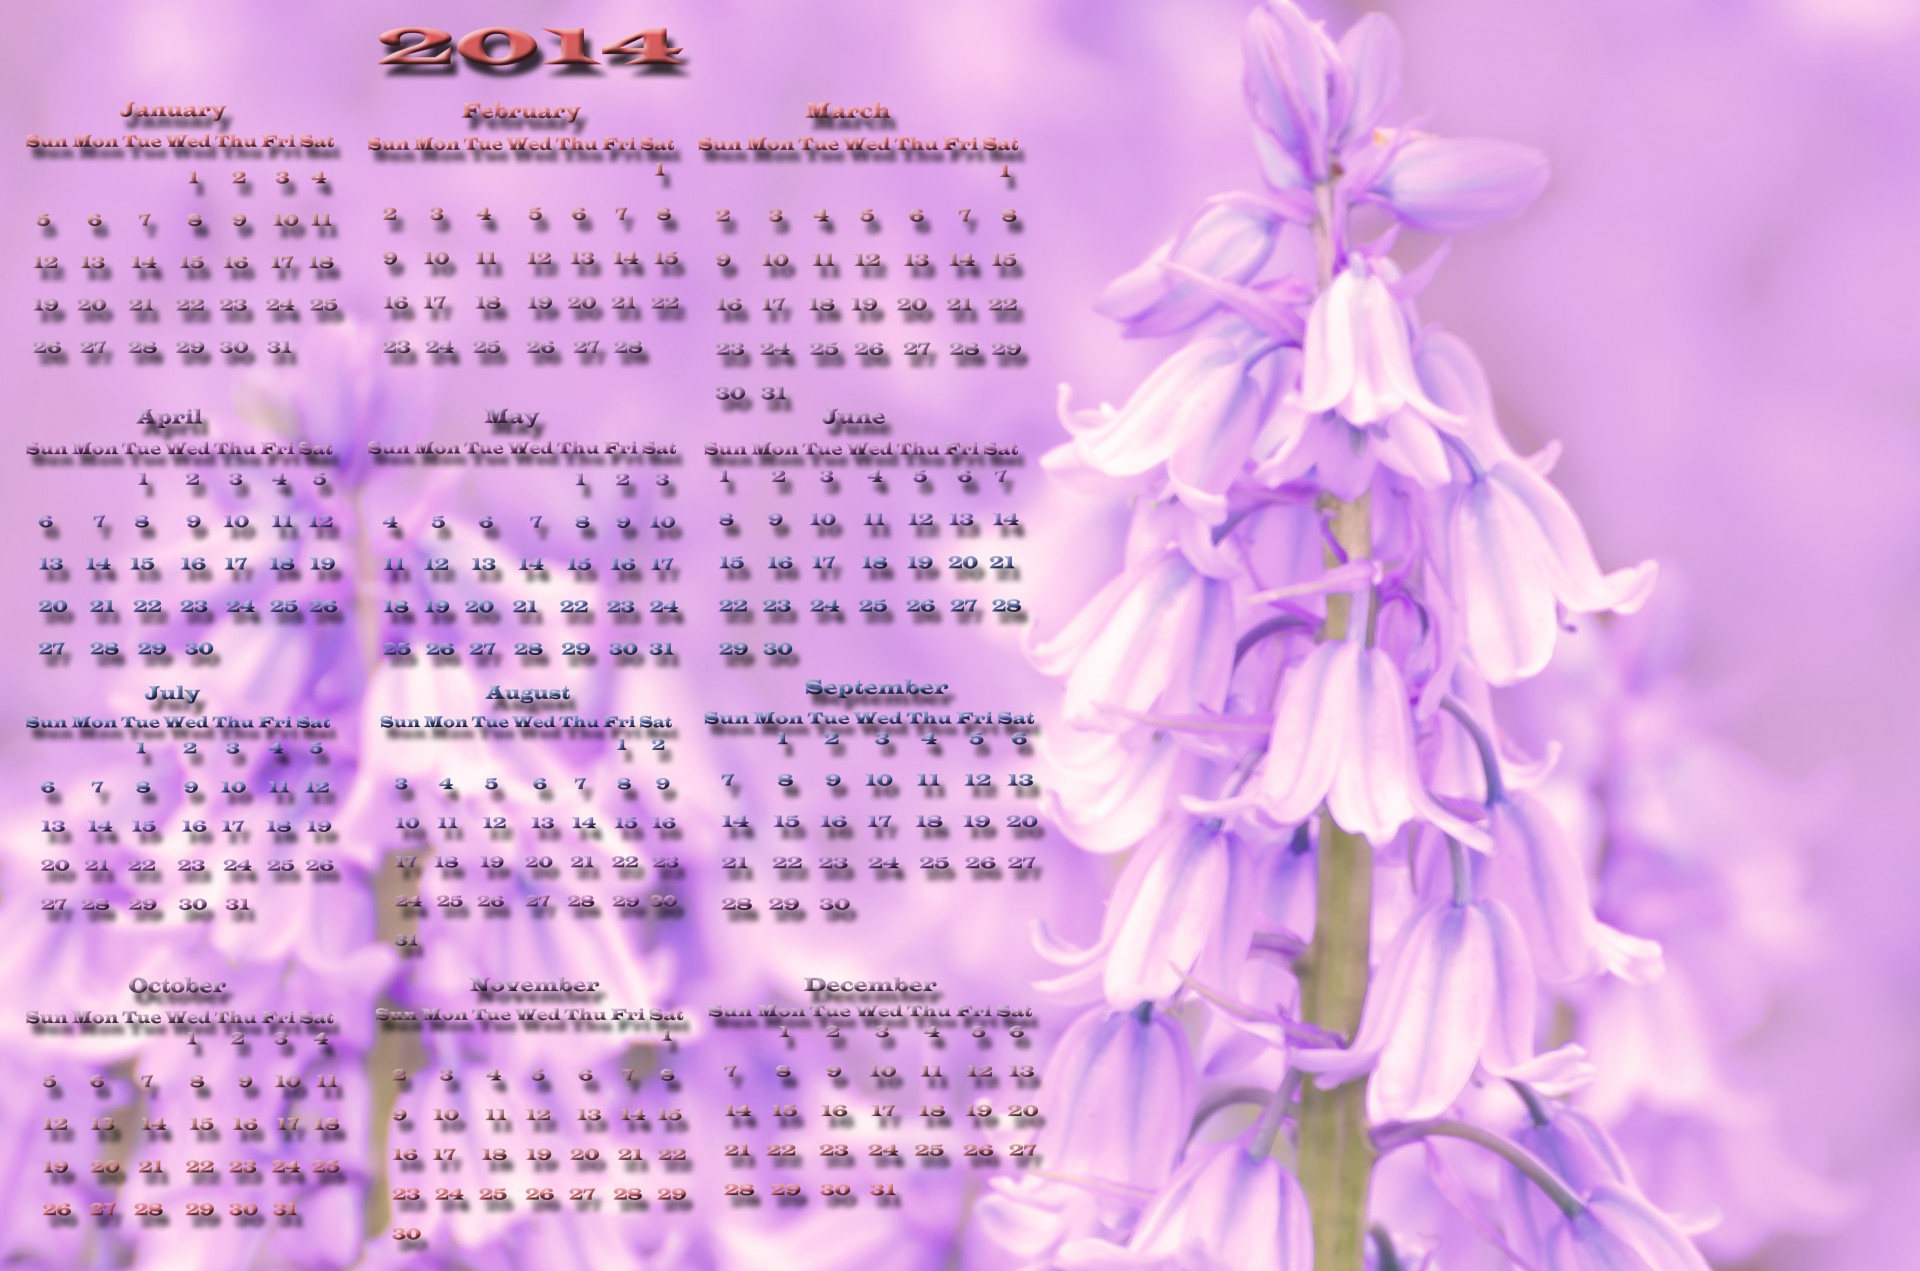 2014 calendar vector free photo